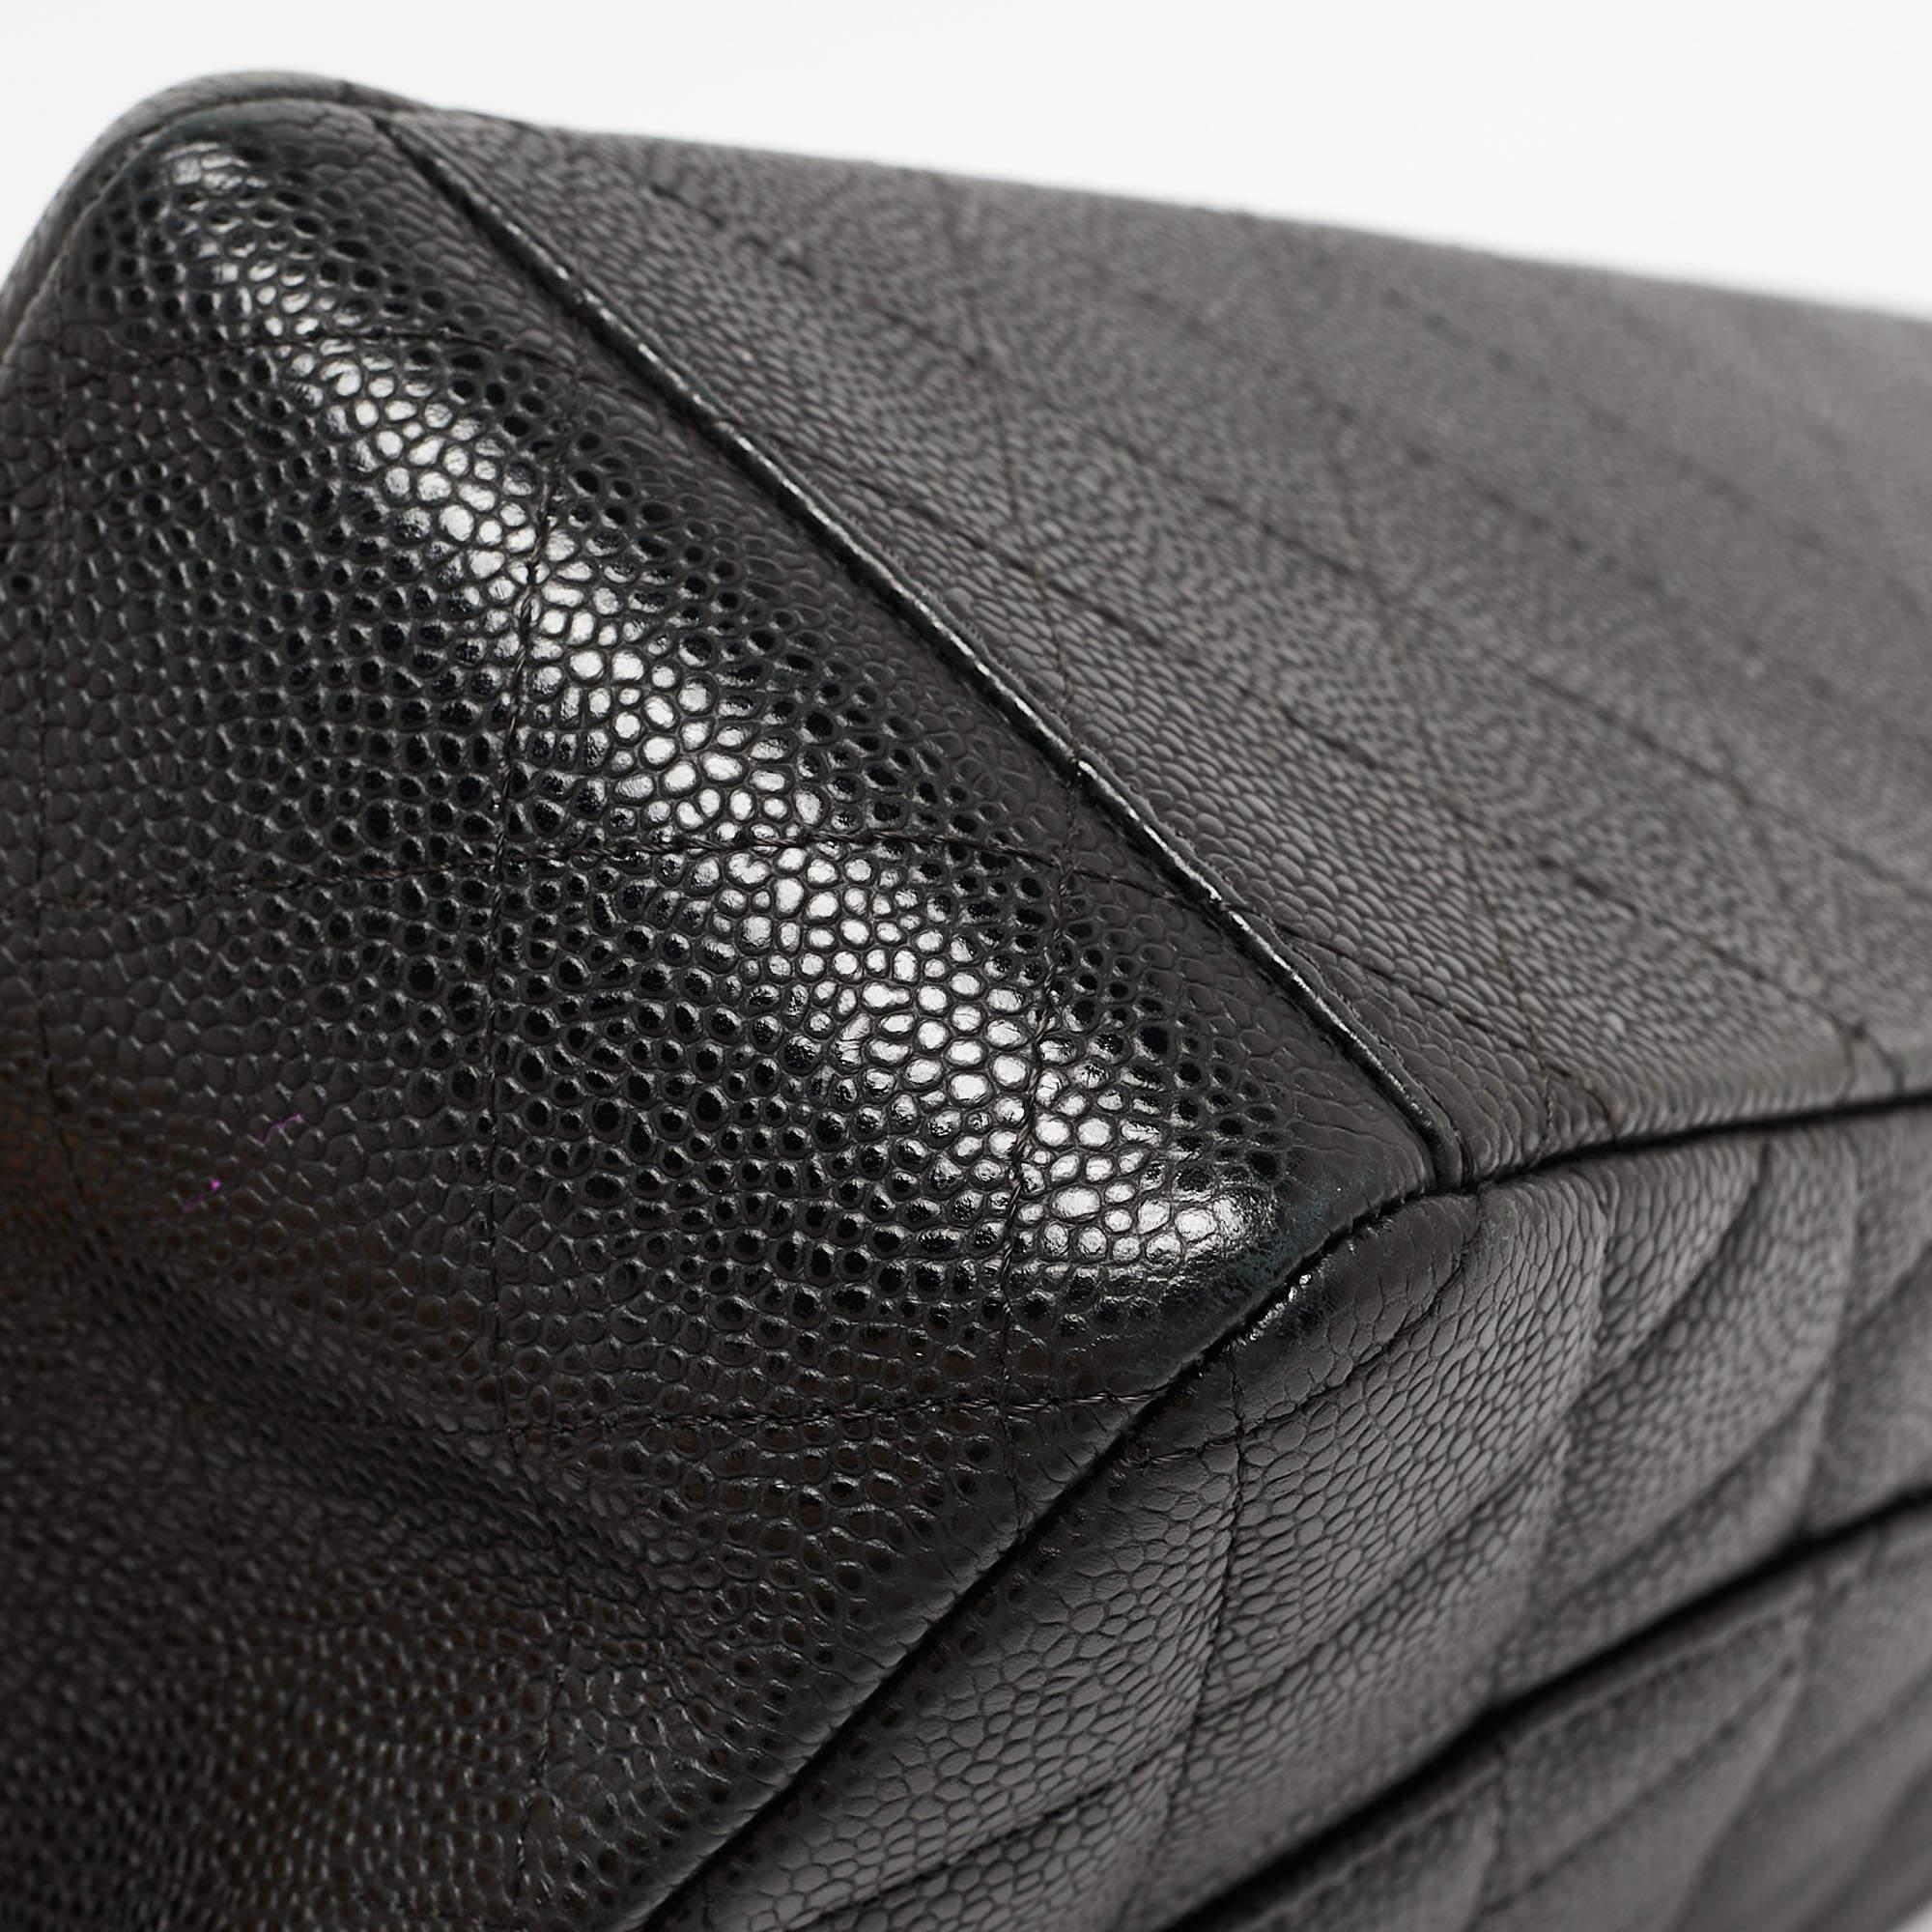 Chanel - Sac à double rabat classique Maxi en cuir texturé noir matelassé 1